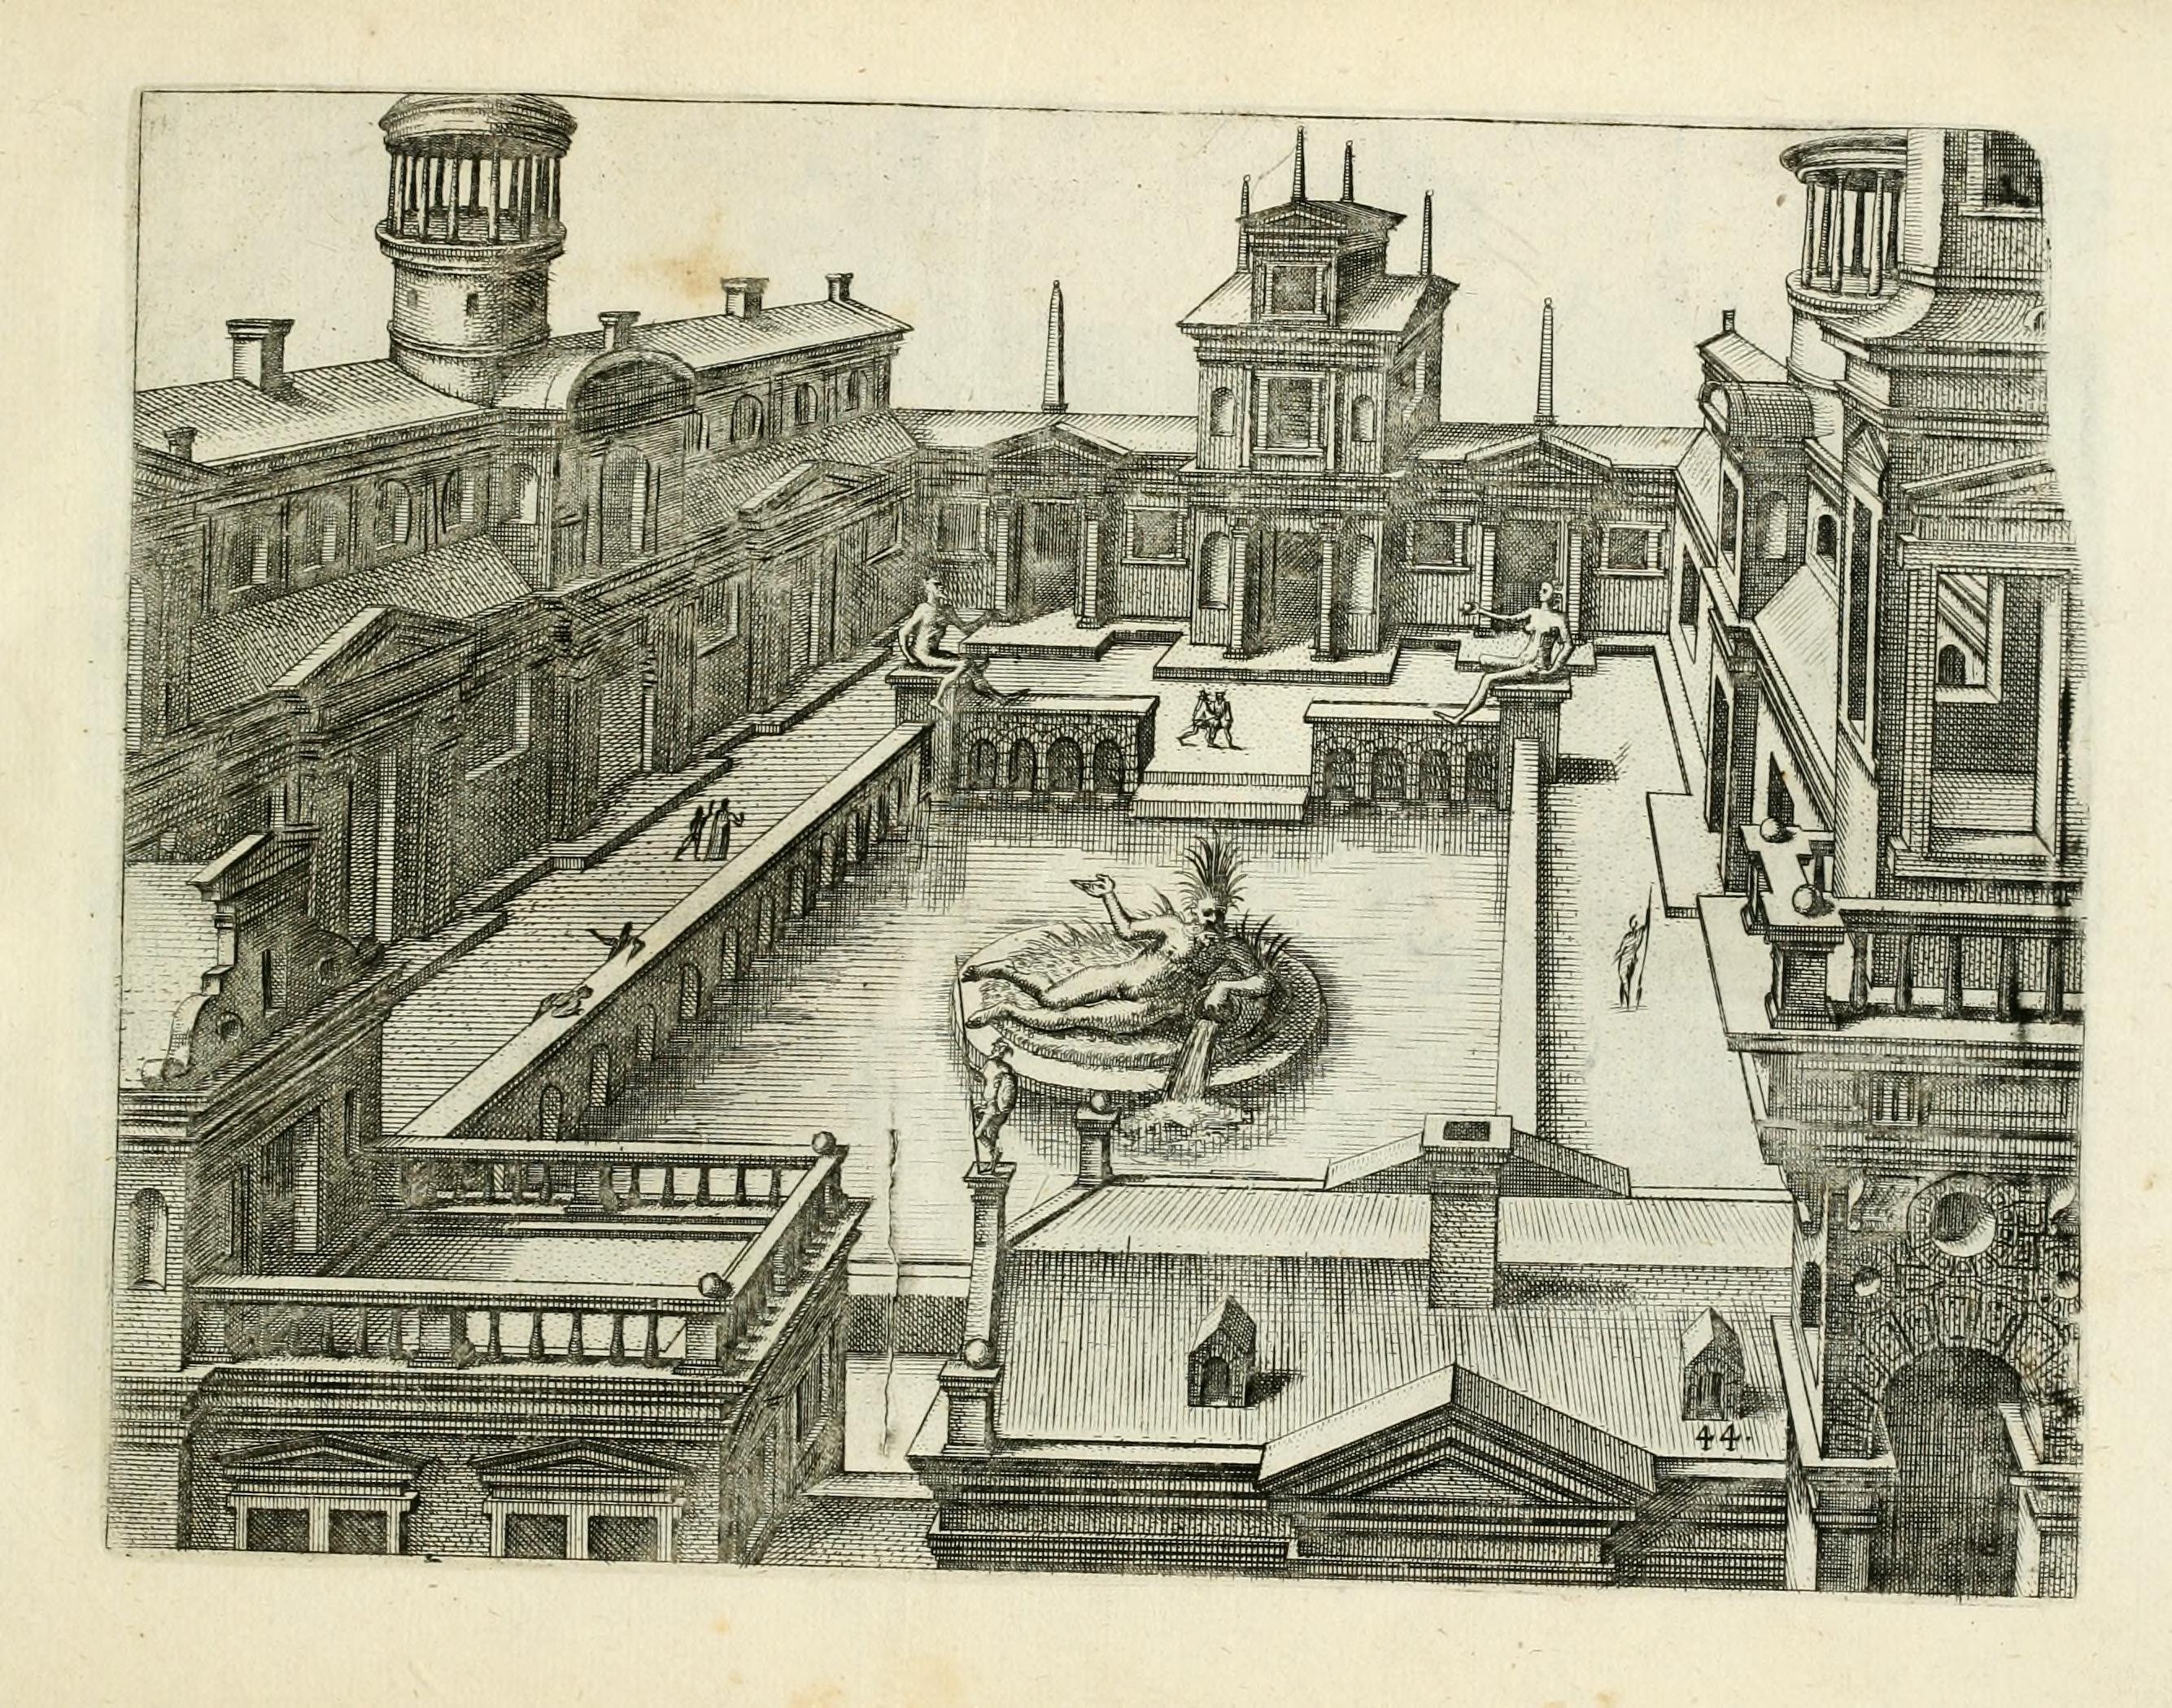 Hans Vredeman de Vries. Variae architecturae formae. 1636. Getty Research Institute.